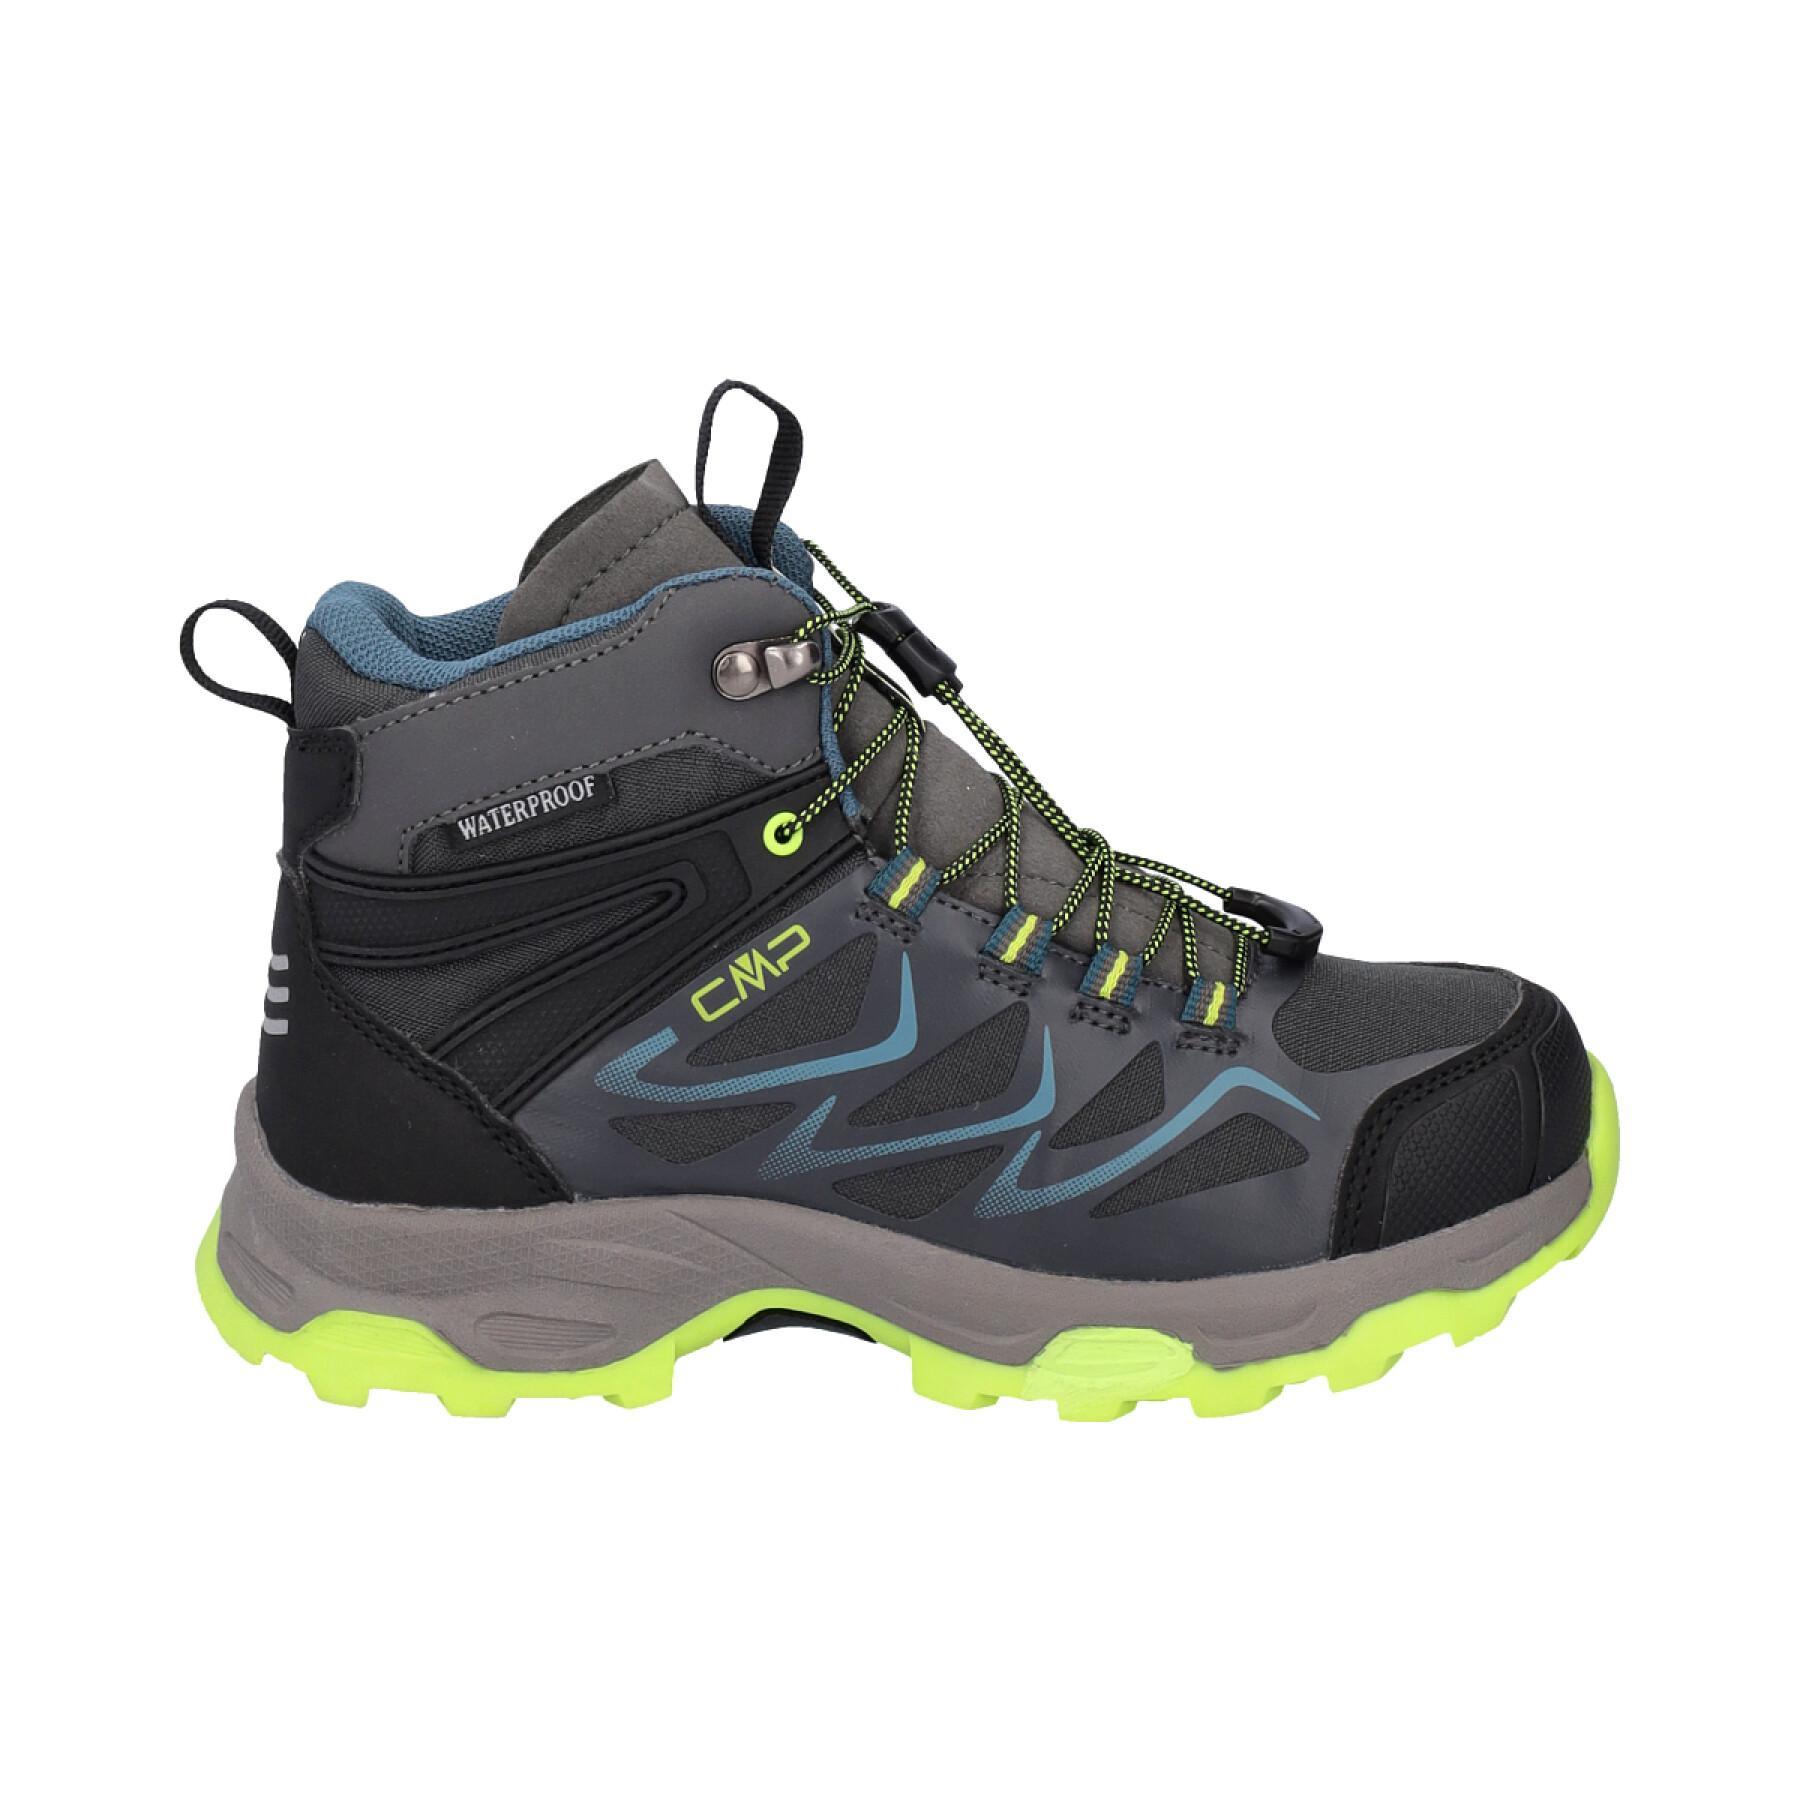 Chaussures de randonnée mid enfant CMP Byne Waterproof